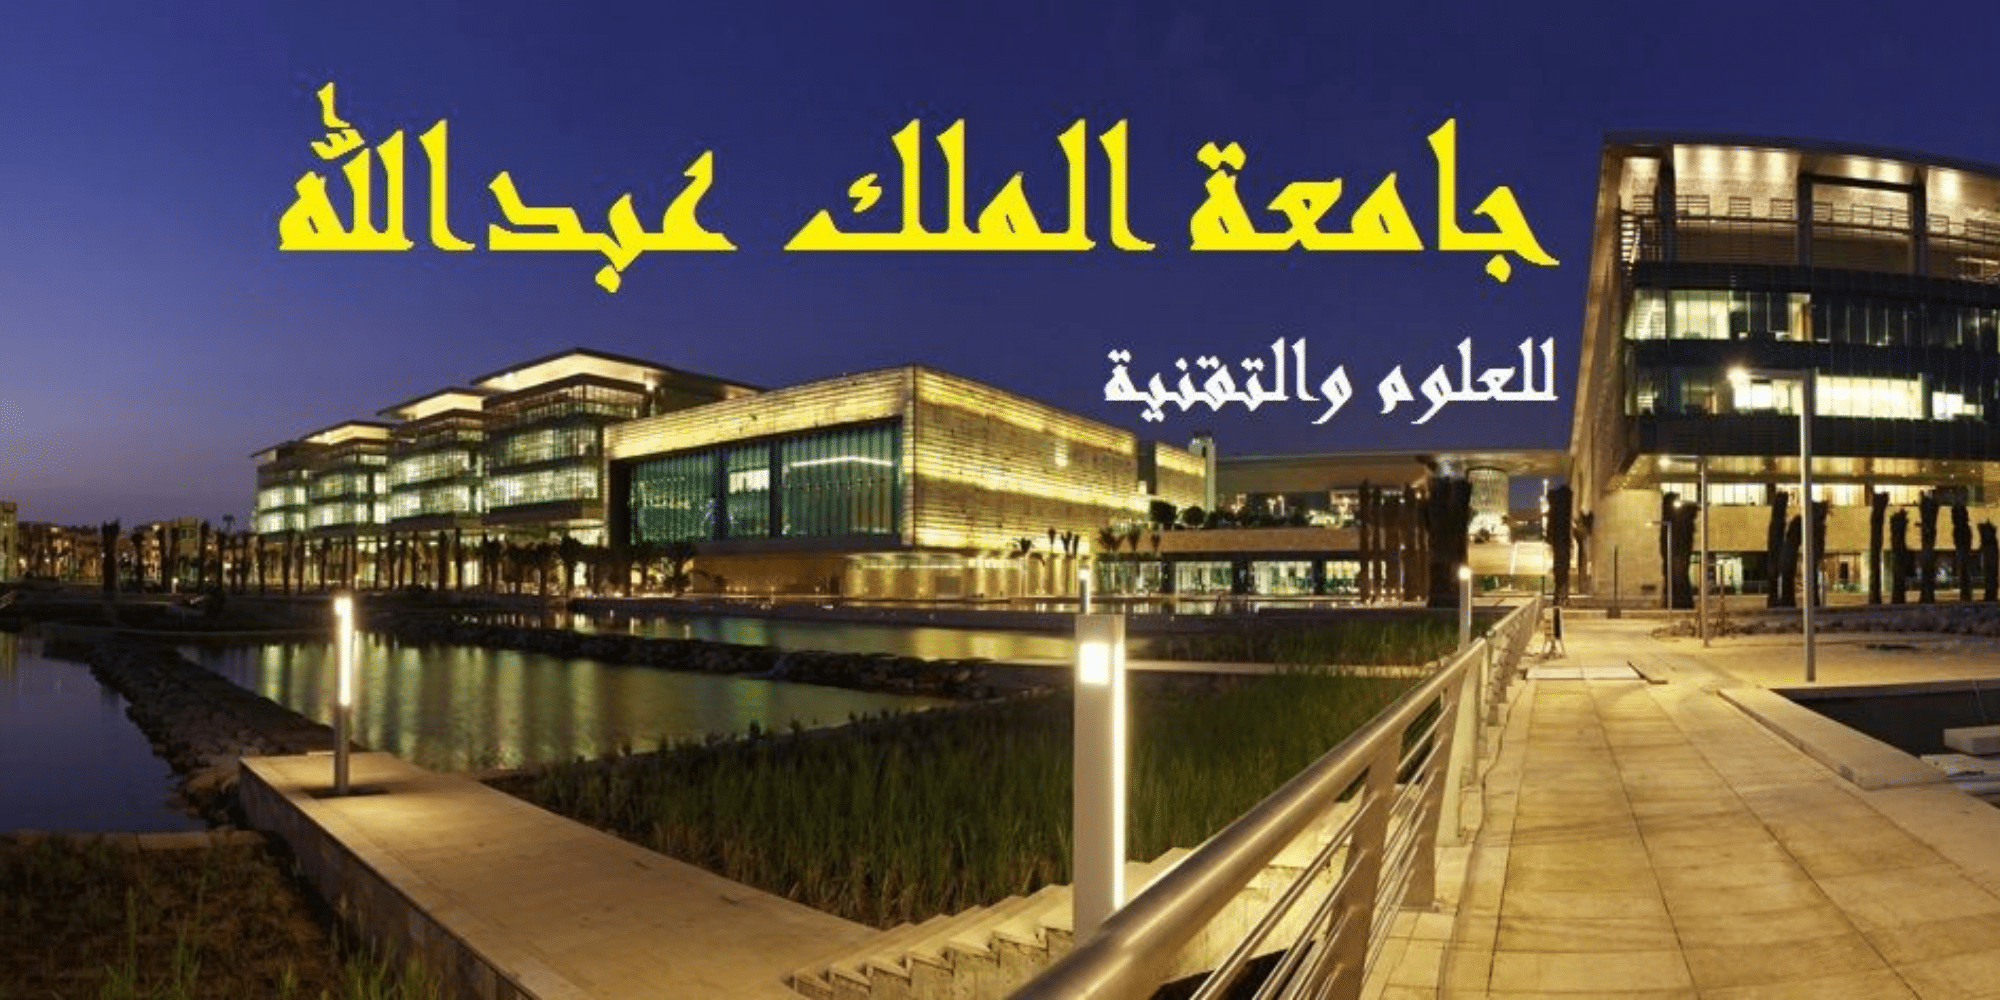 جامعة الملك عبدالله للعلوم والتقنية تعلن عن وظائف لحملة الثانوية فاعلي